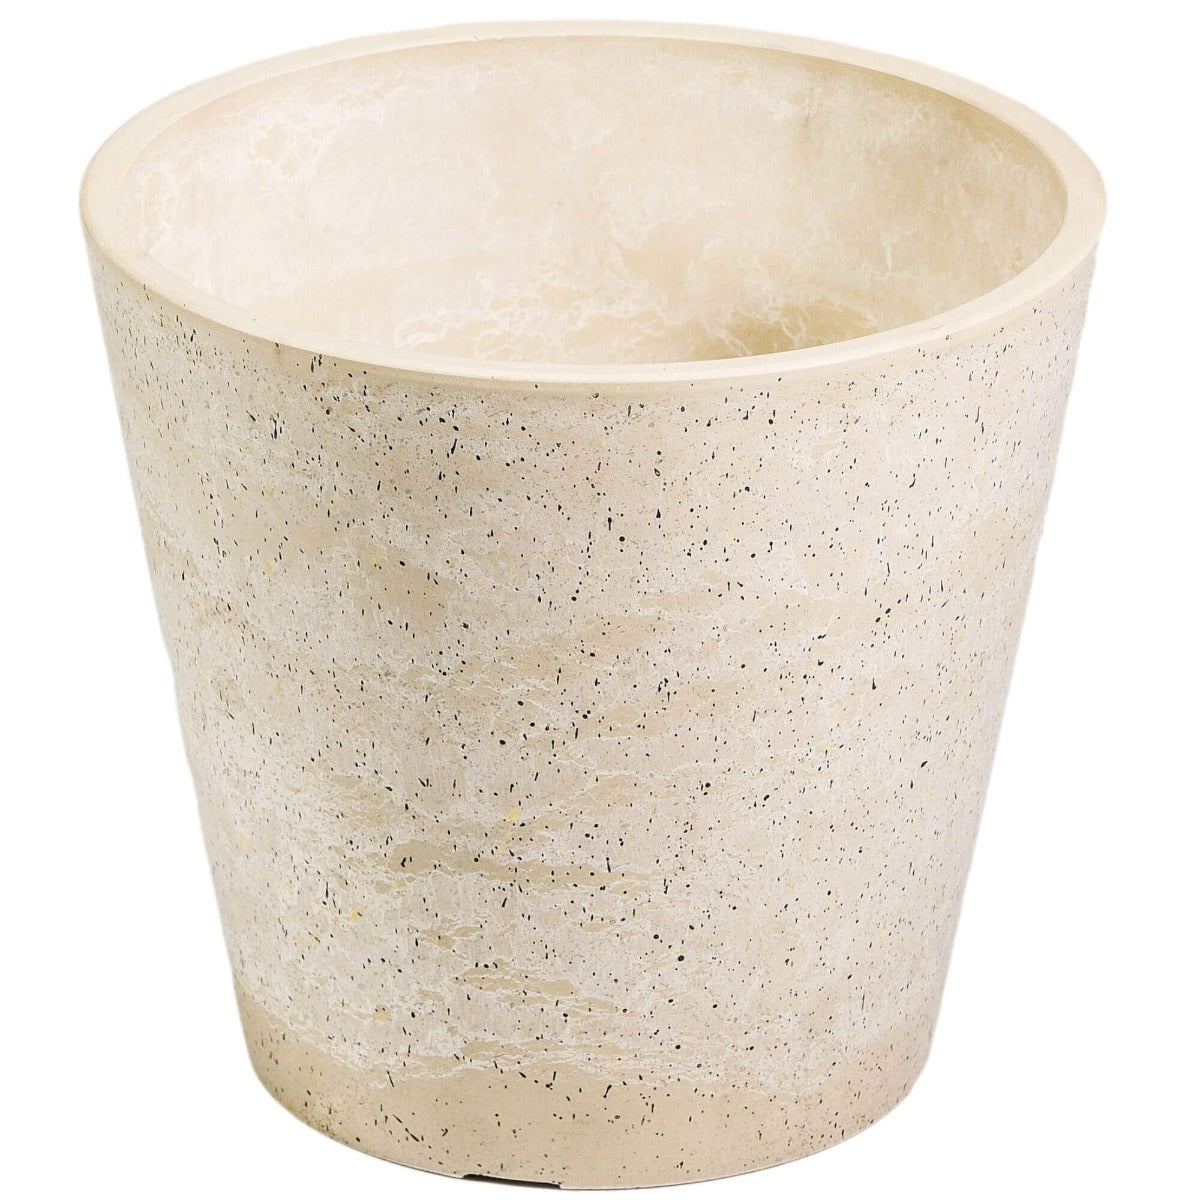 imitation-stone-white-cream-pot-20cm